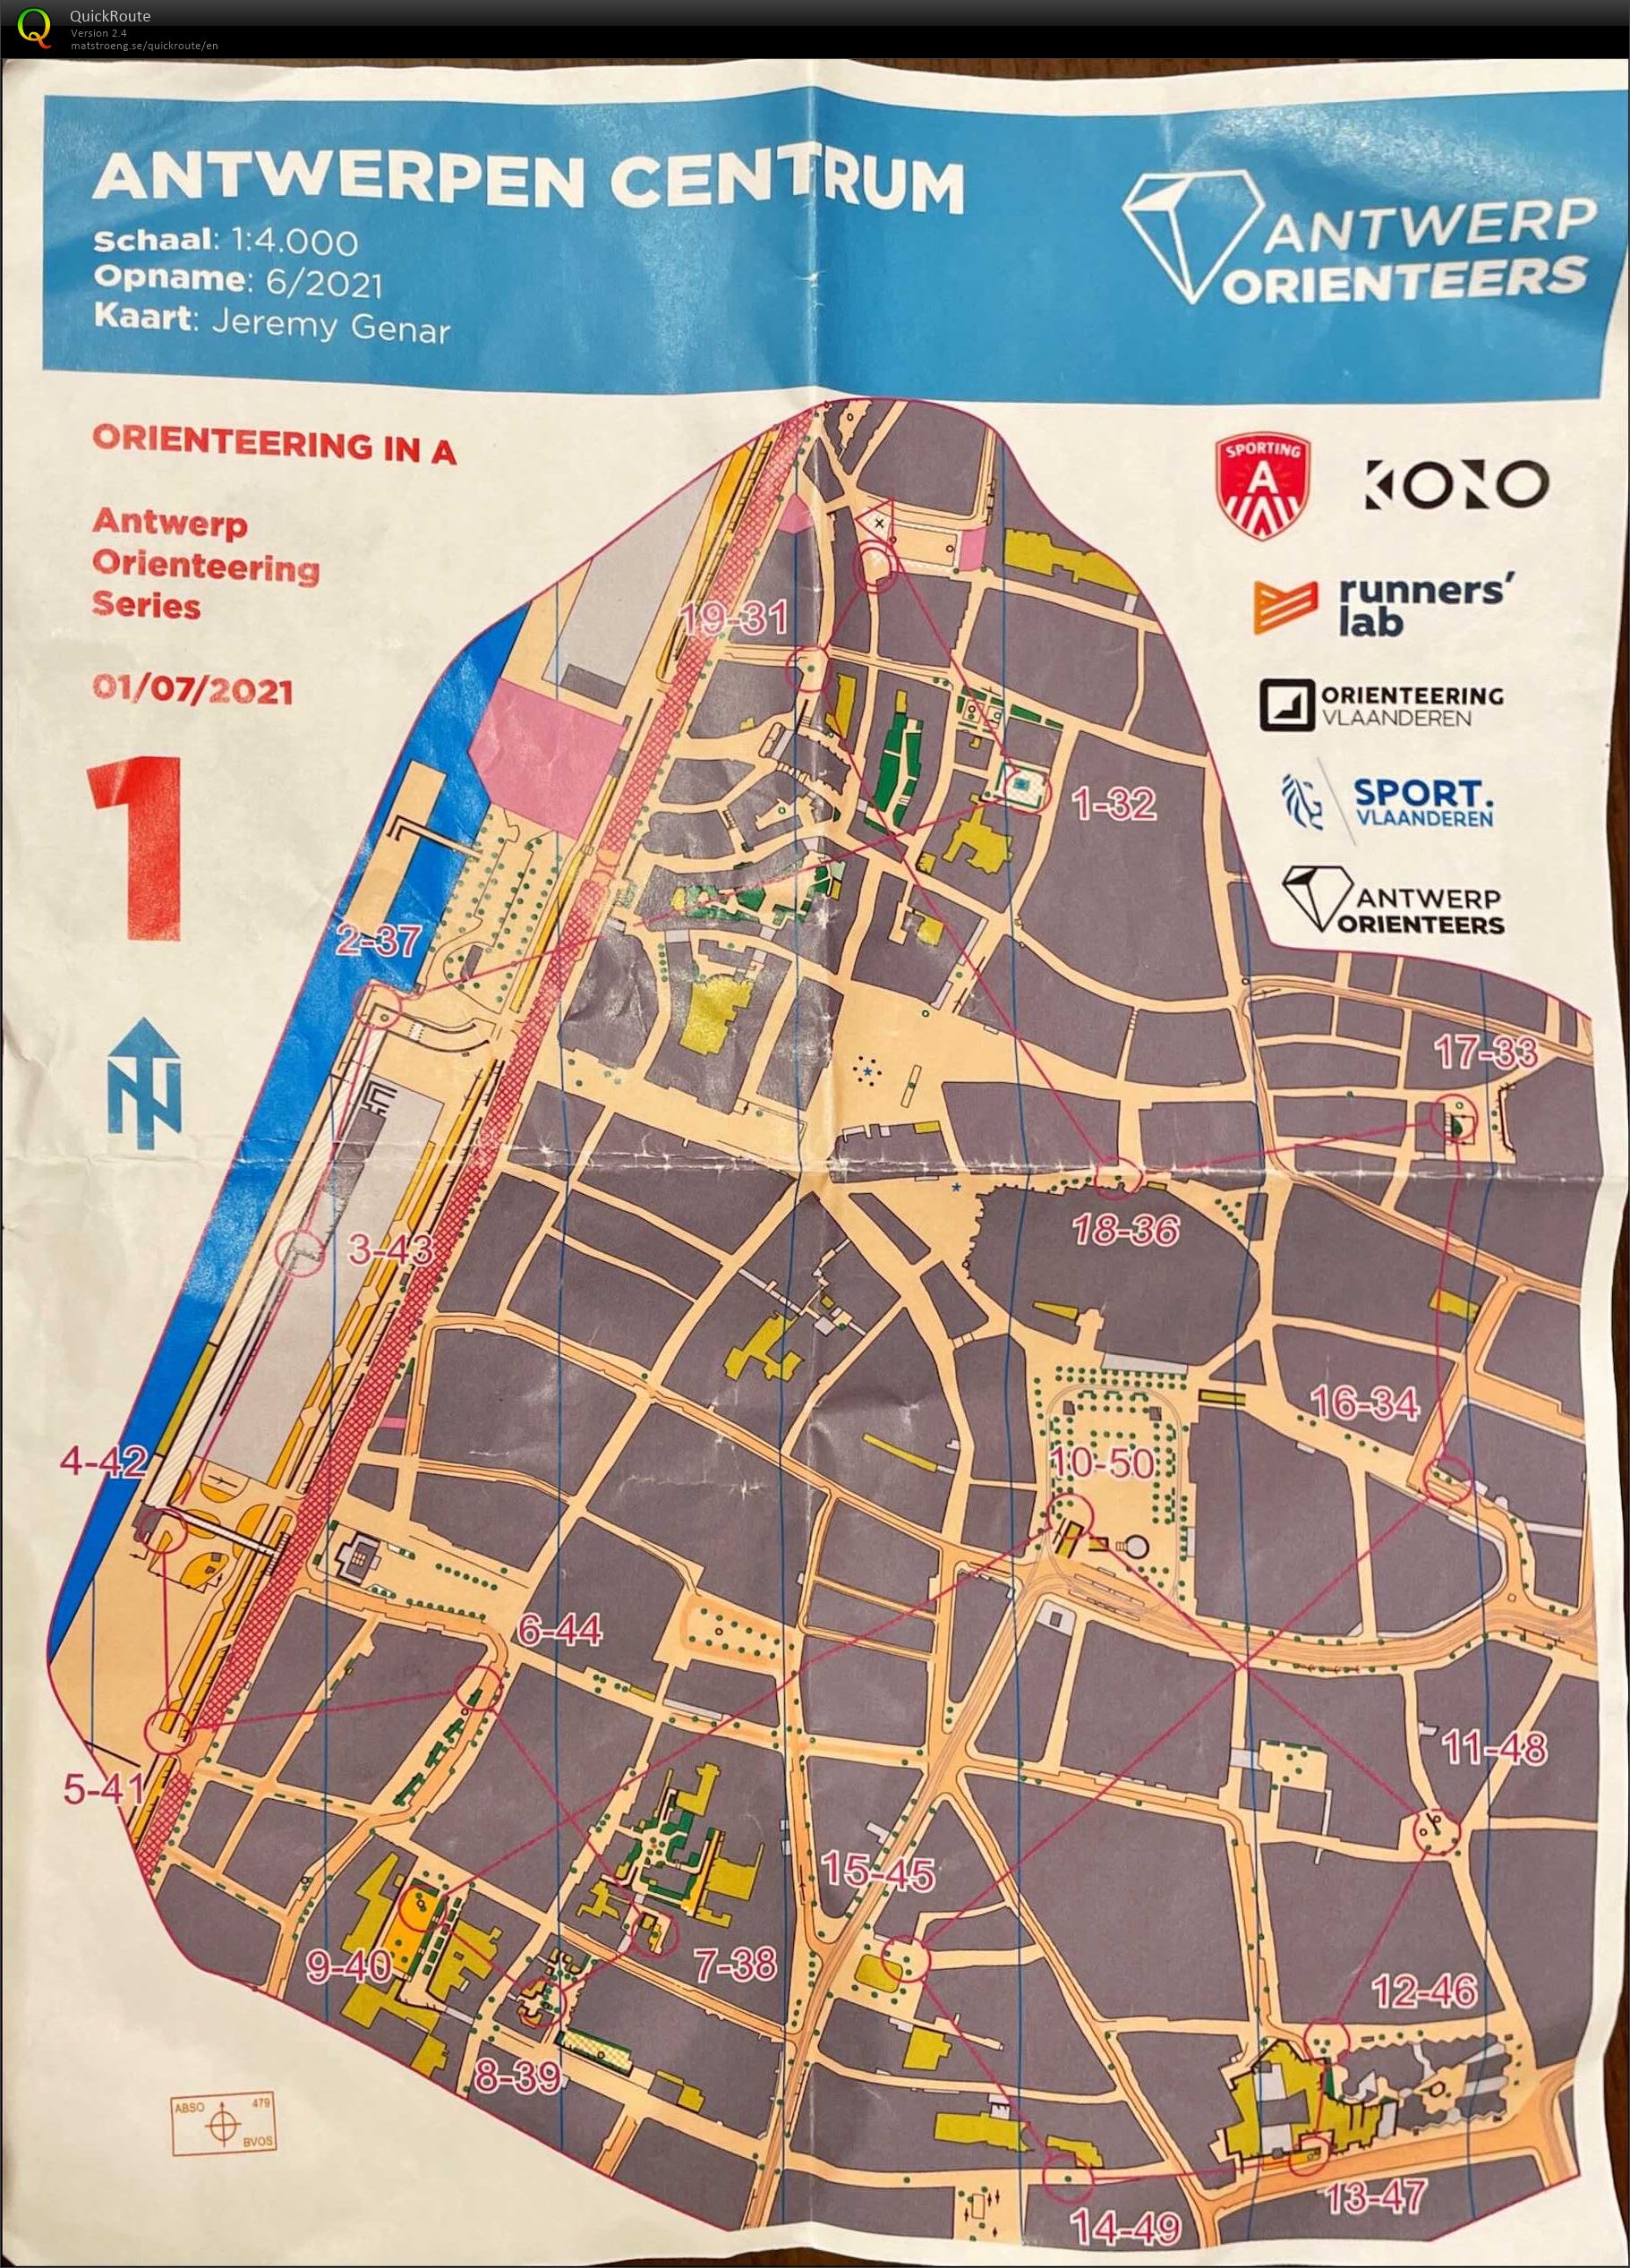 Antwerp Orienteering Series - Antwerpen Centrum - 5K (01/07/2021)